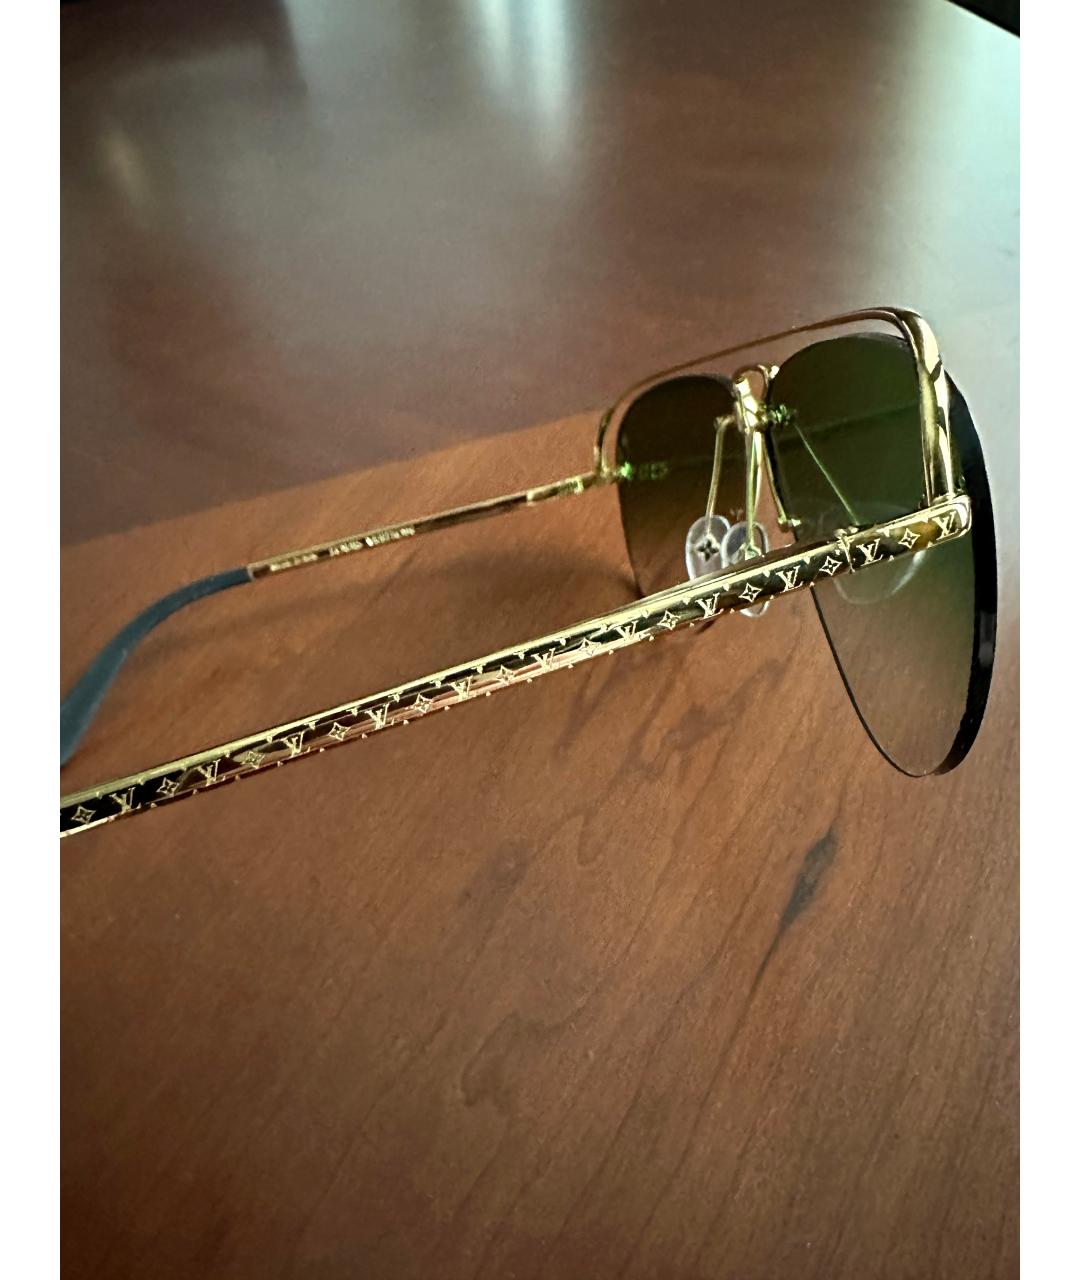 LOUIS VUITTON PRE-OWNED Золотые металлические солнцезащитные очки, фото 4